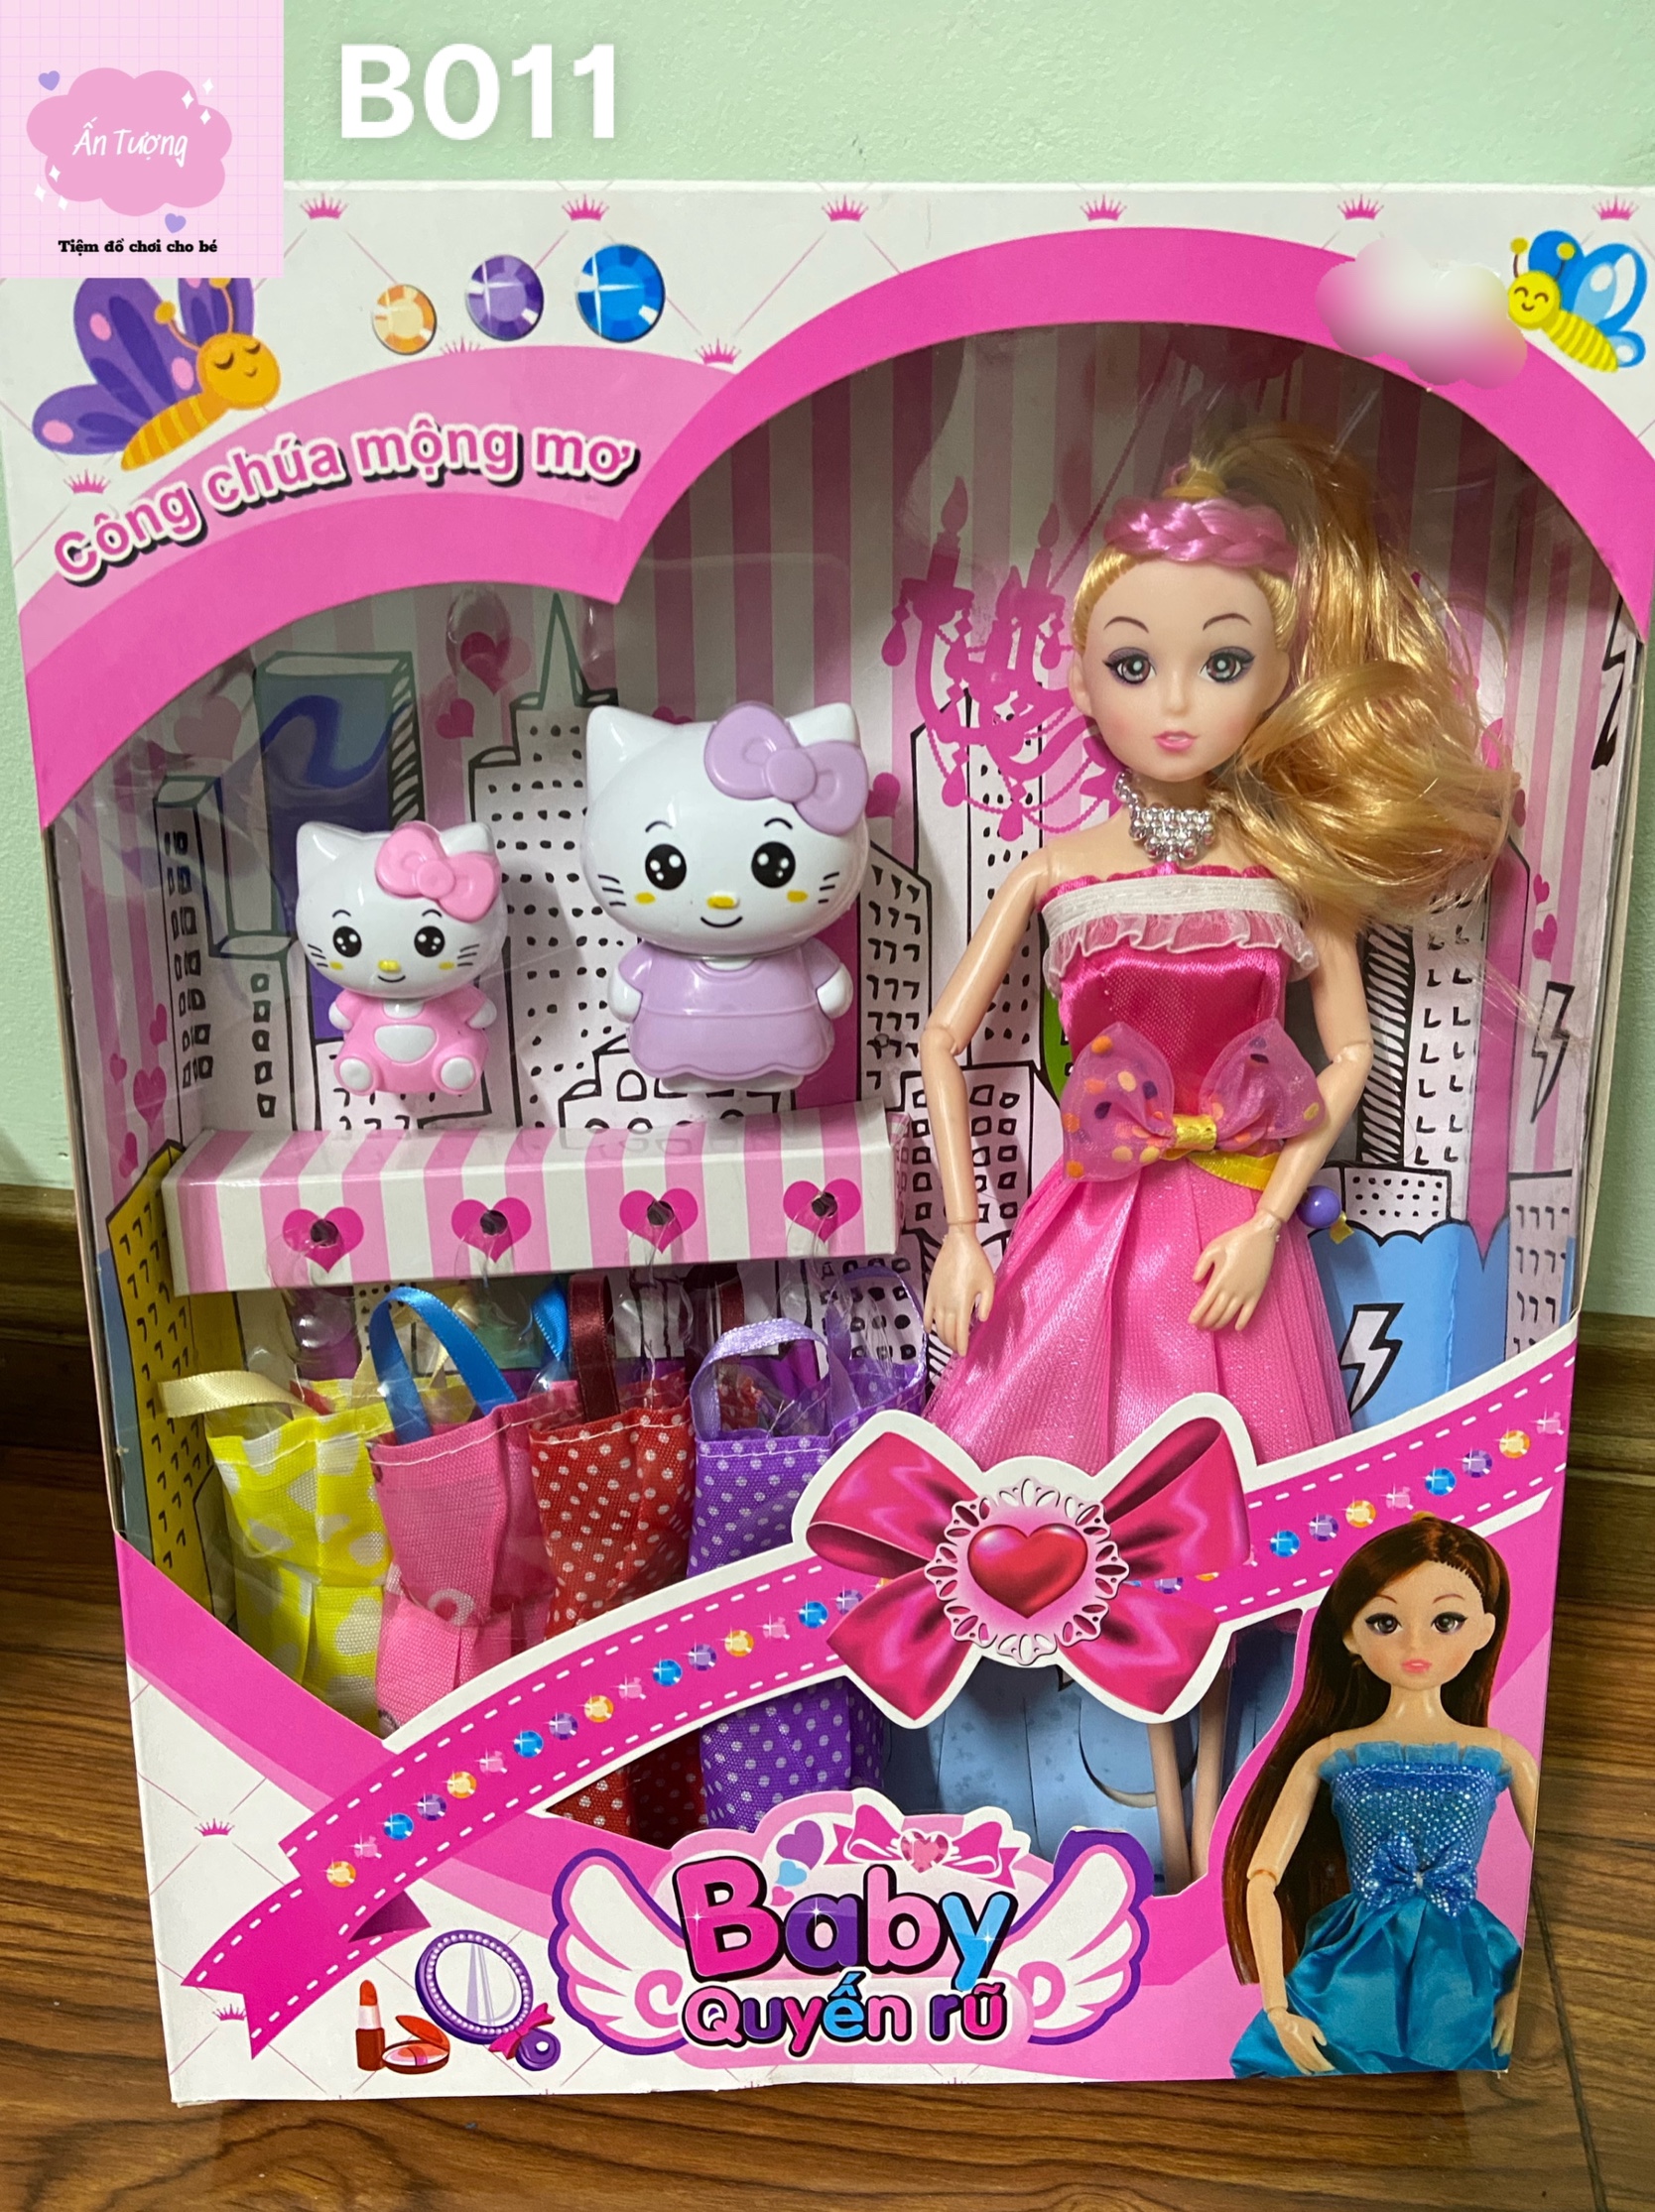 Đồ Chơi Bé Gái - Đồ Chơi Búp Bê- Hộp Búp Bê Barbie, Búp Bê Bjd Khớp Xoay  Kèm Phụ Kiện Mèo Kitty Dễ Thương - Giá Tiki Khuyến Mãi: 170,000Đ -